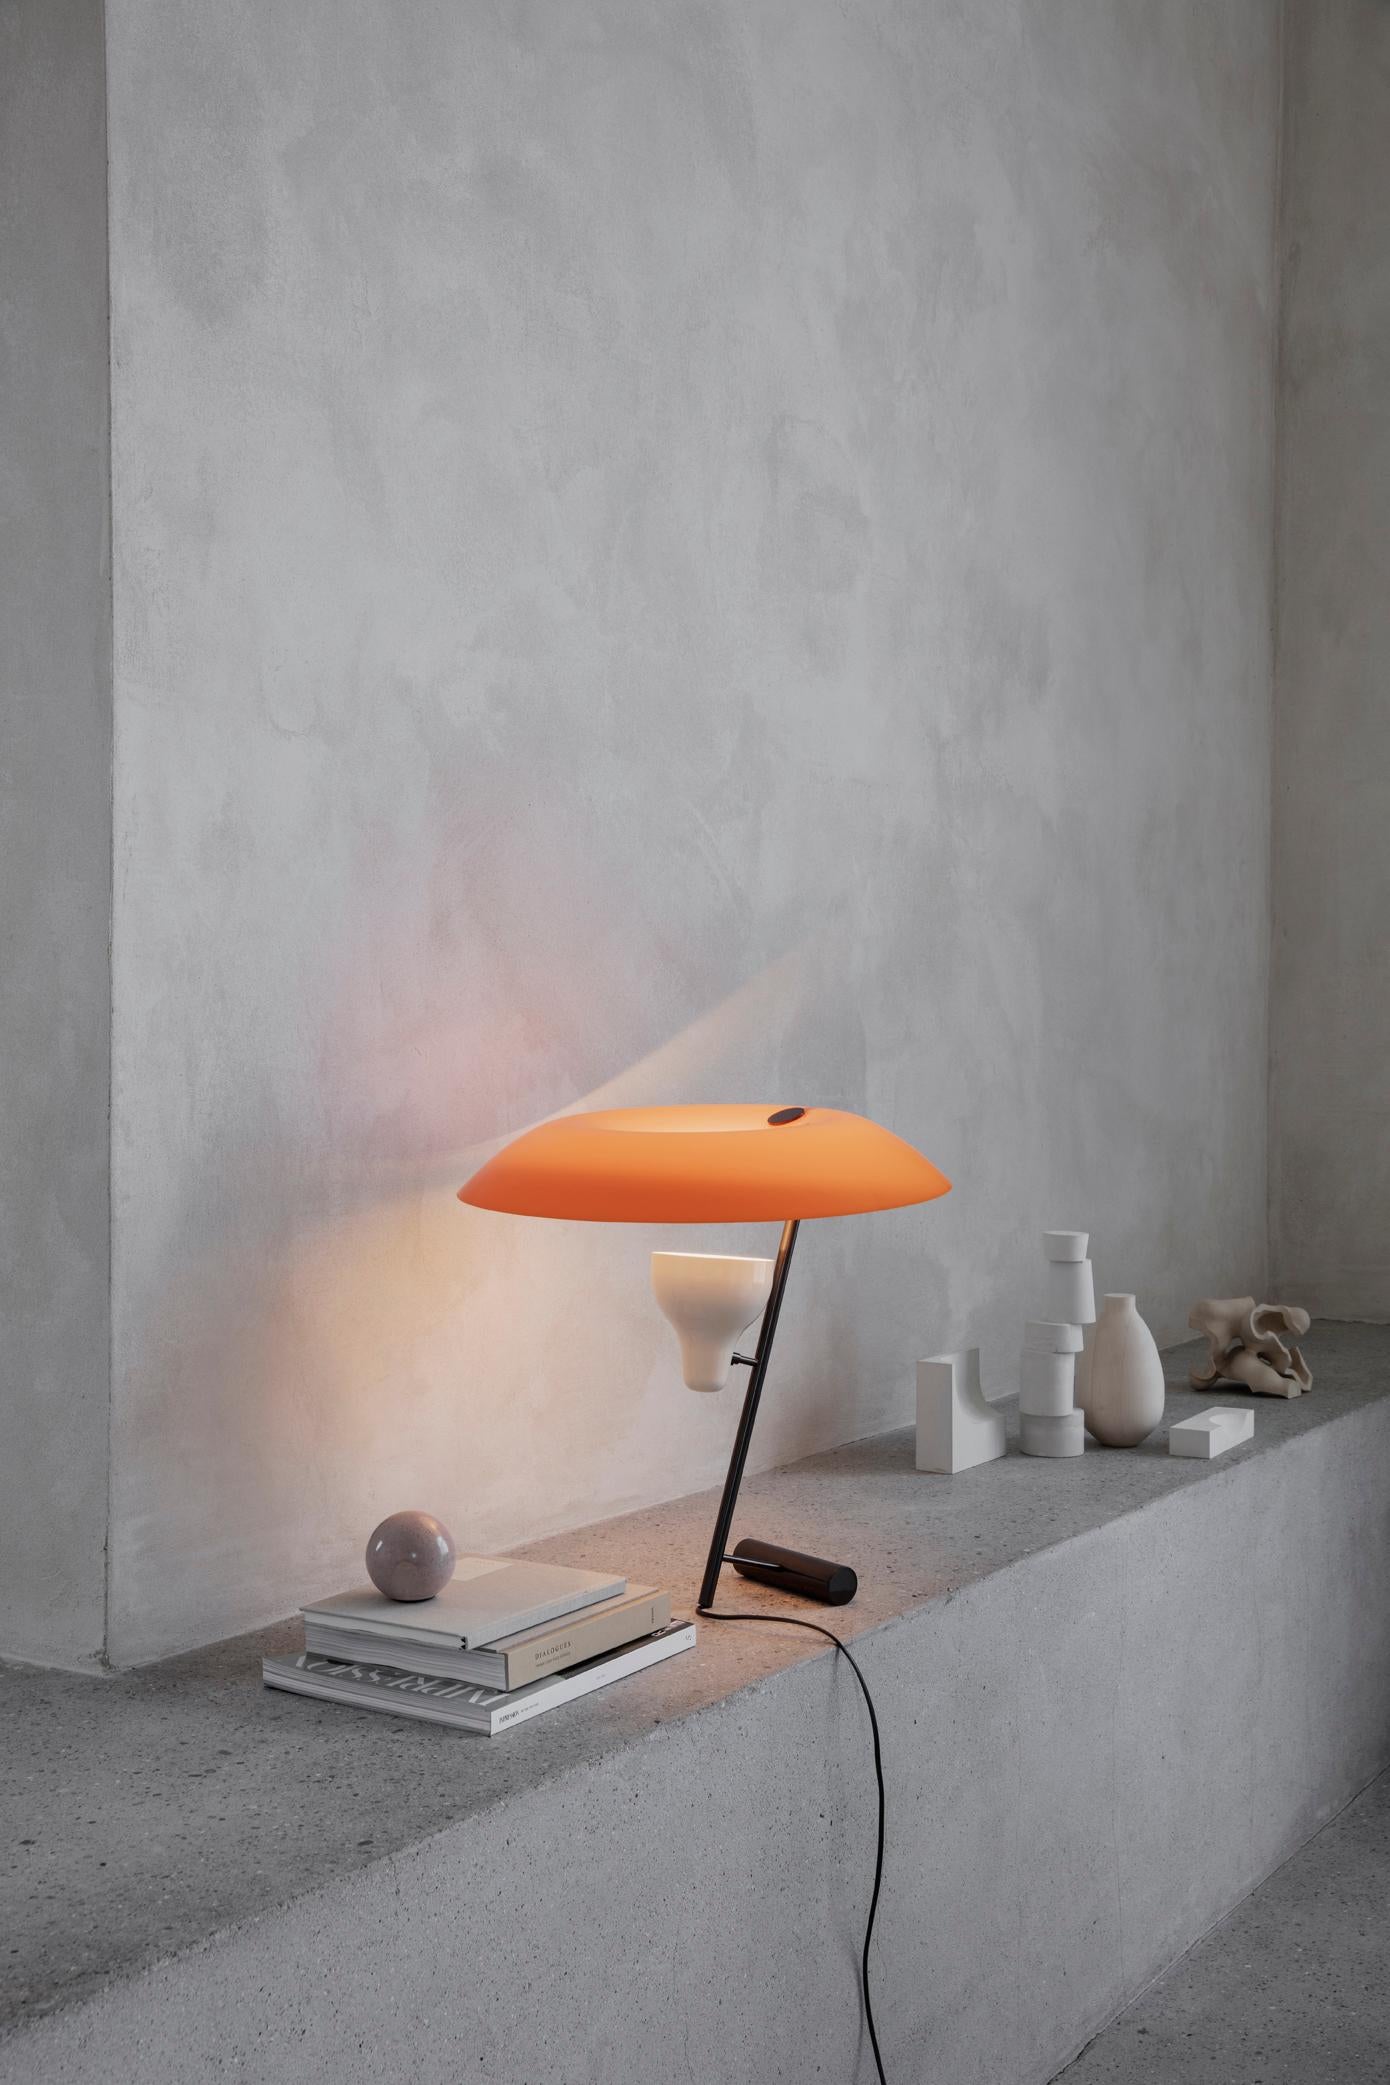 Modèle 548
Design par Gino Sarfatti
Cette lampe de table conçue en 1951 est une étude de l'équilibre et de la réflexion de la lumière à travers un écran, un thème récurrent dans l'œuvre de Gino Sarfatti. Le modèle 548 fournit une lumière à la fois